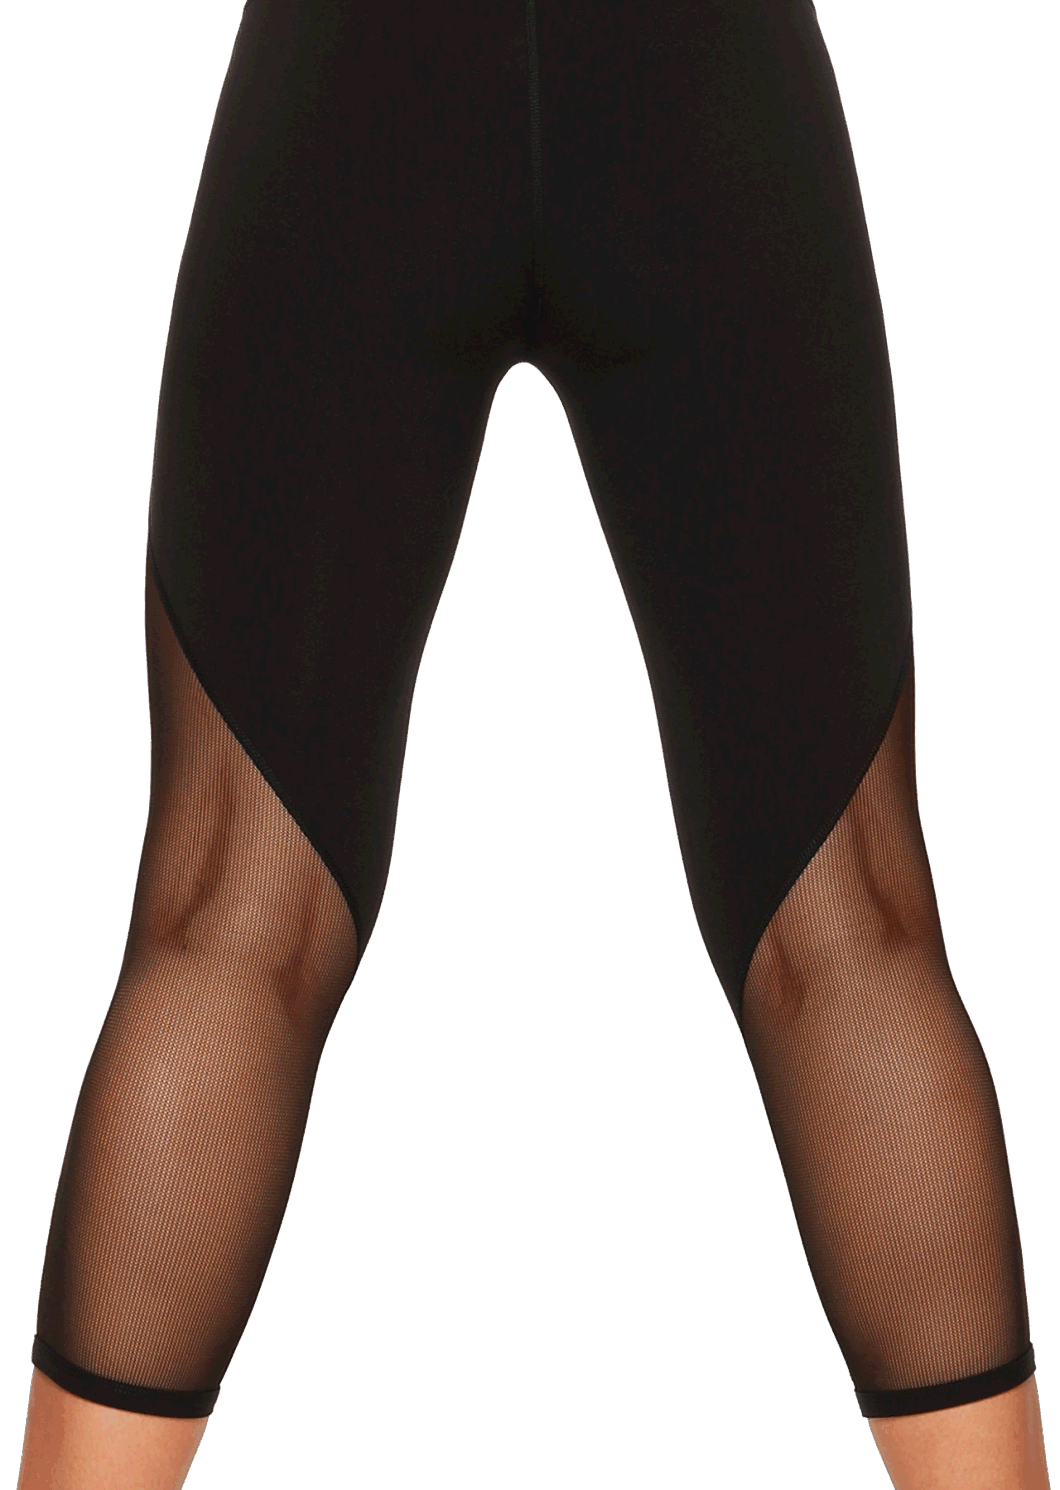 Custom Black Capris Mesh High Waist Yoga Pants Fitness Clothing Gym Legging for Women